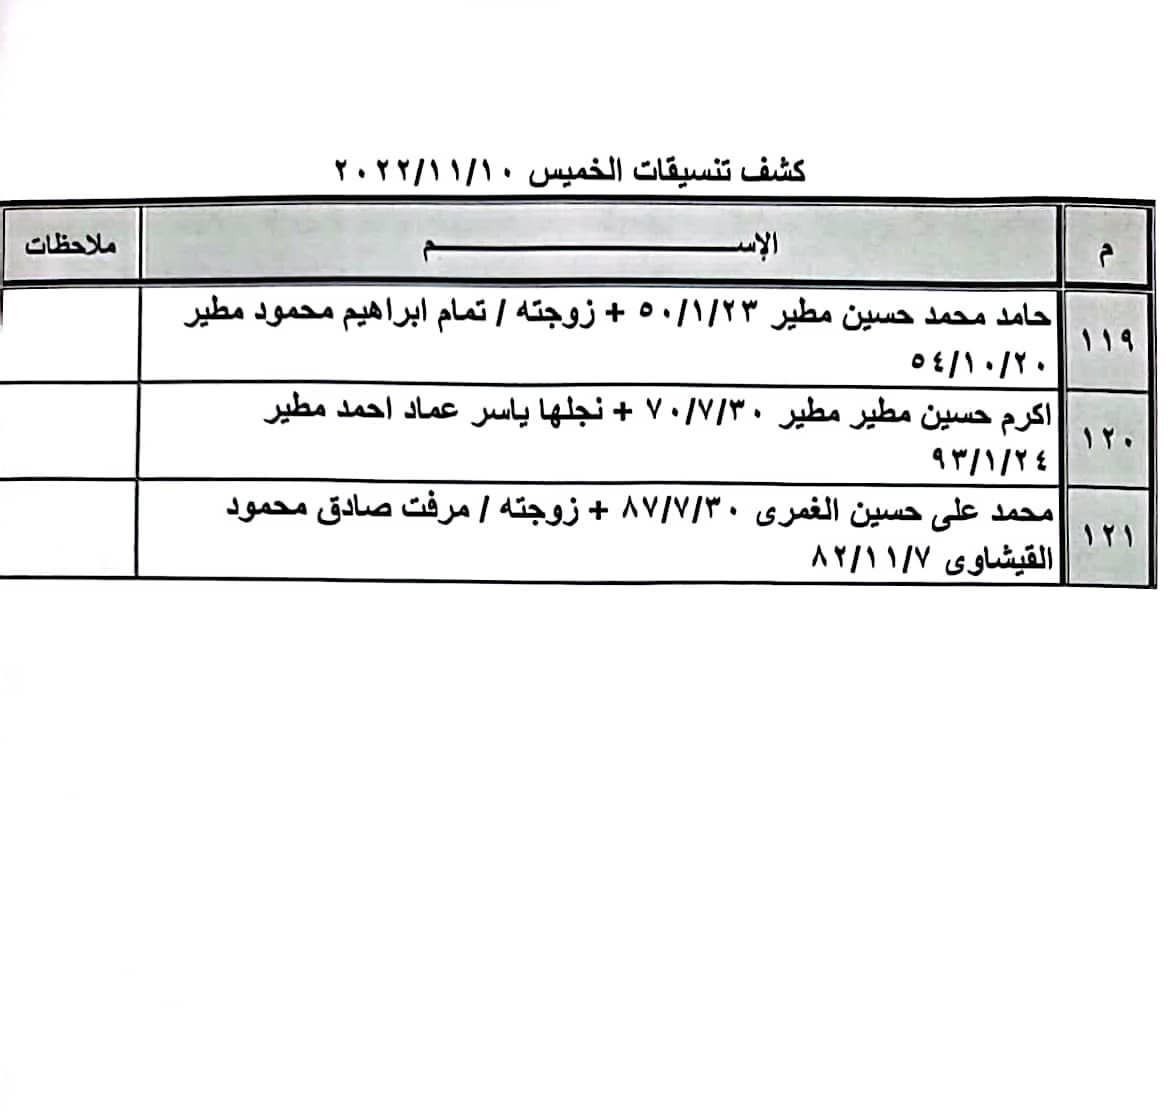 بالأسماء: كشف "تنسيقات مصرية" للسفر عبر معبر رفح الخميس 10 نوفمبر 2022